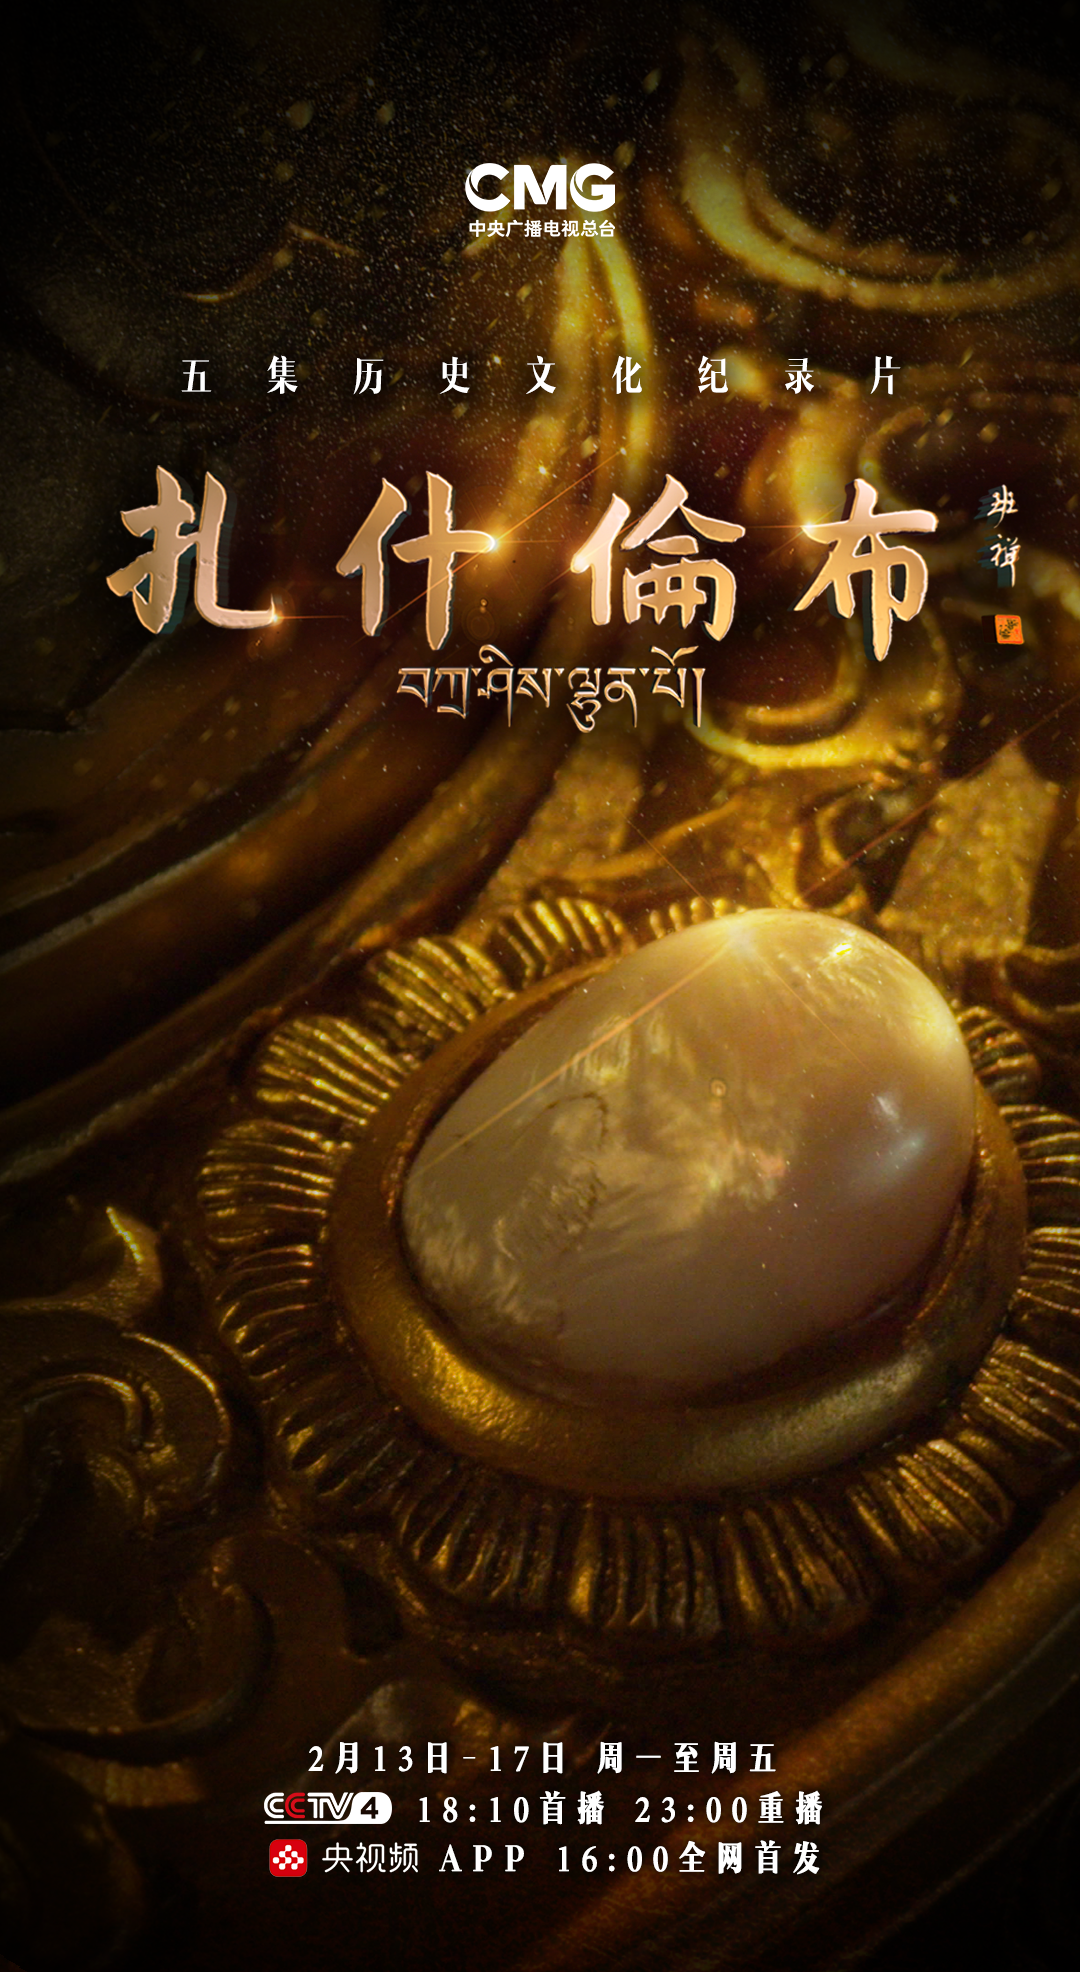 纪录片《扎什伦布》在央视播出 呈现藏传佛教中国化的时光脚步